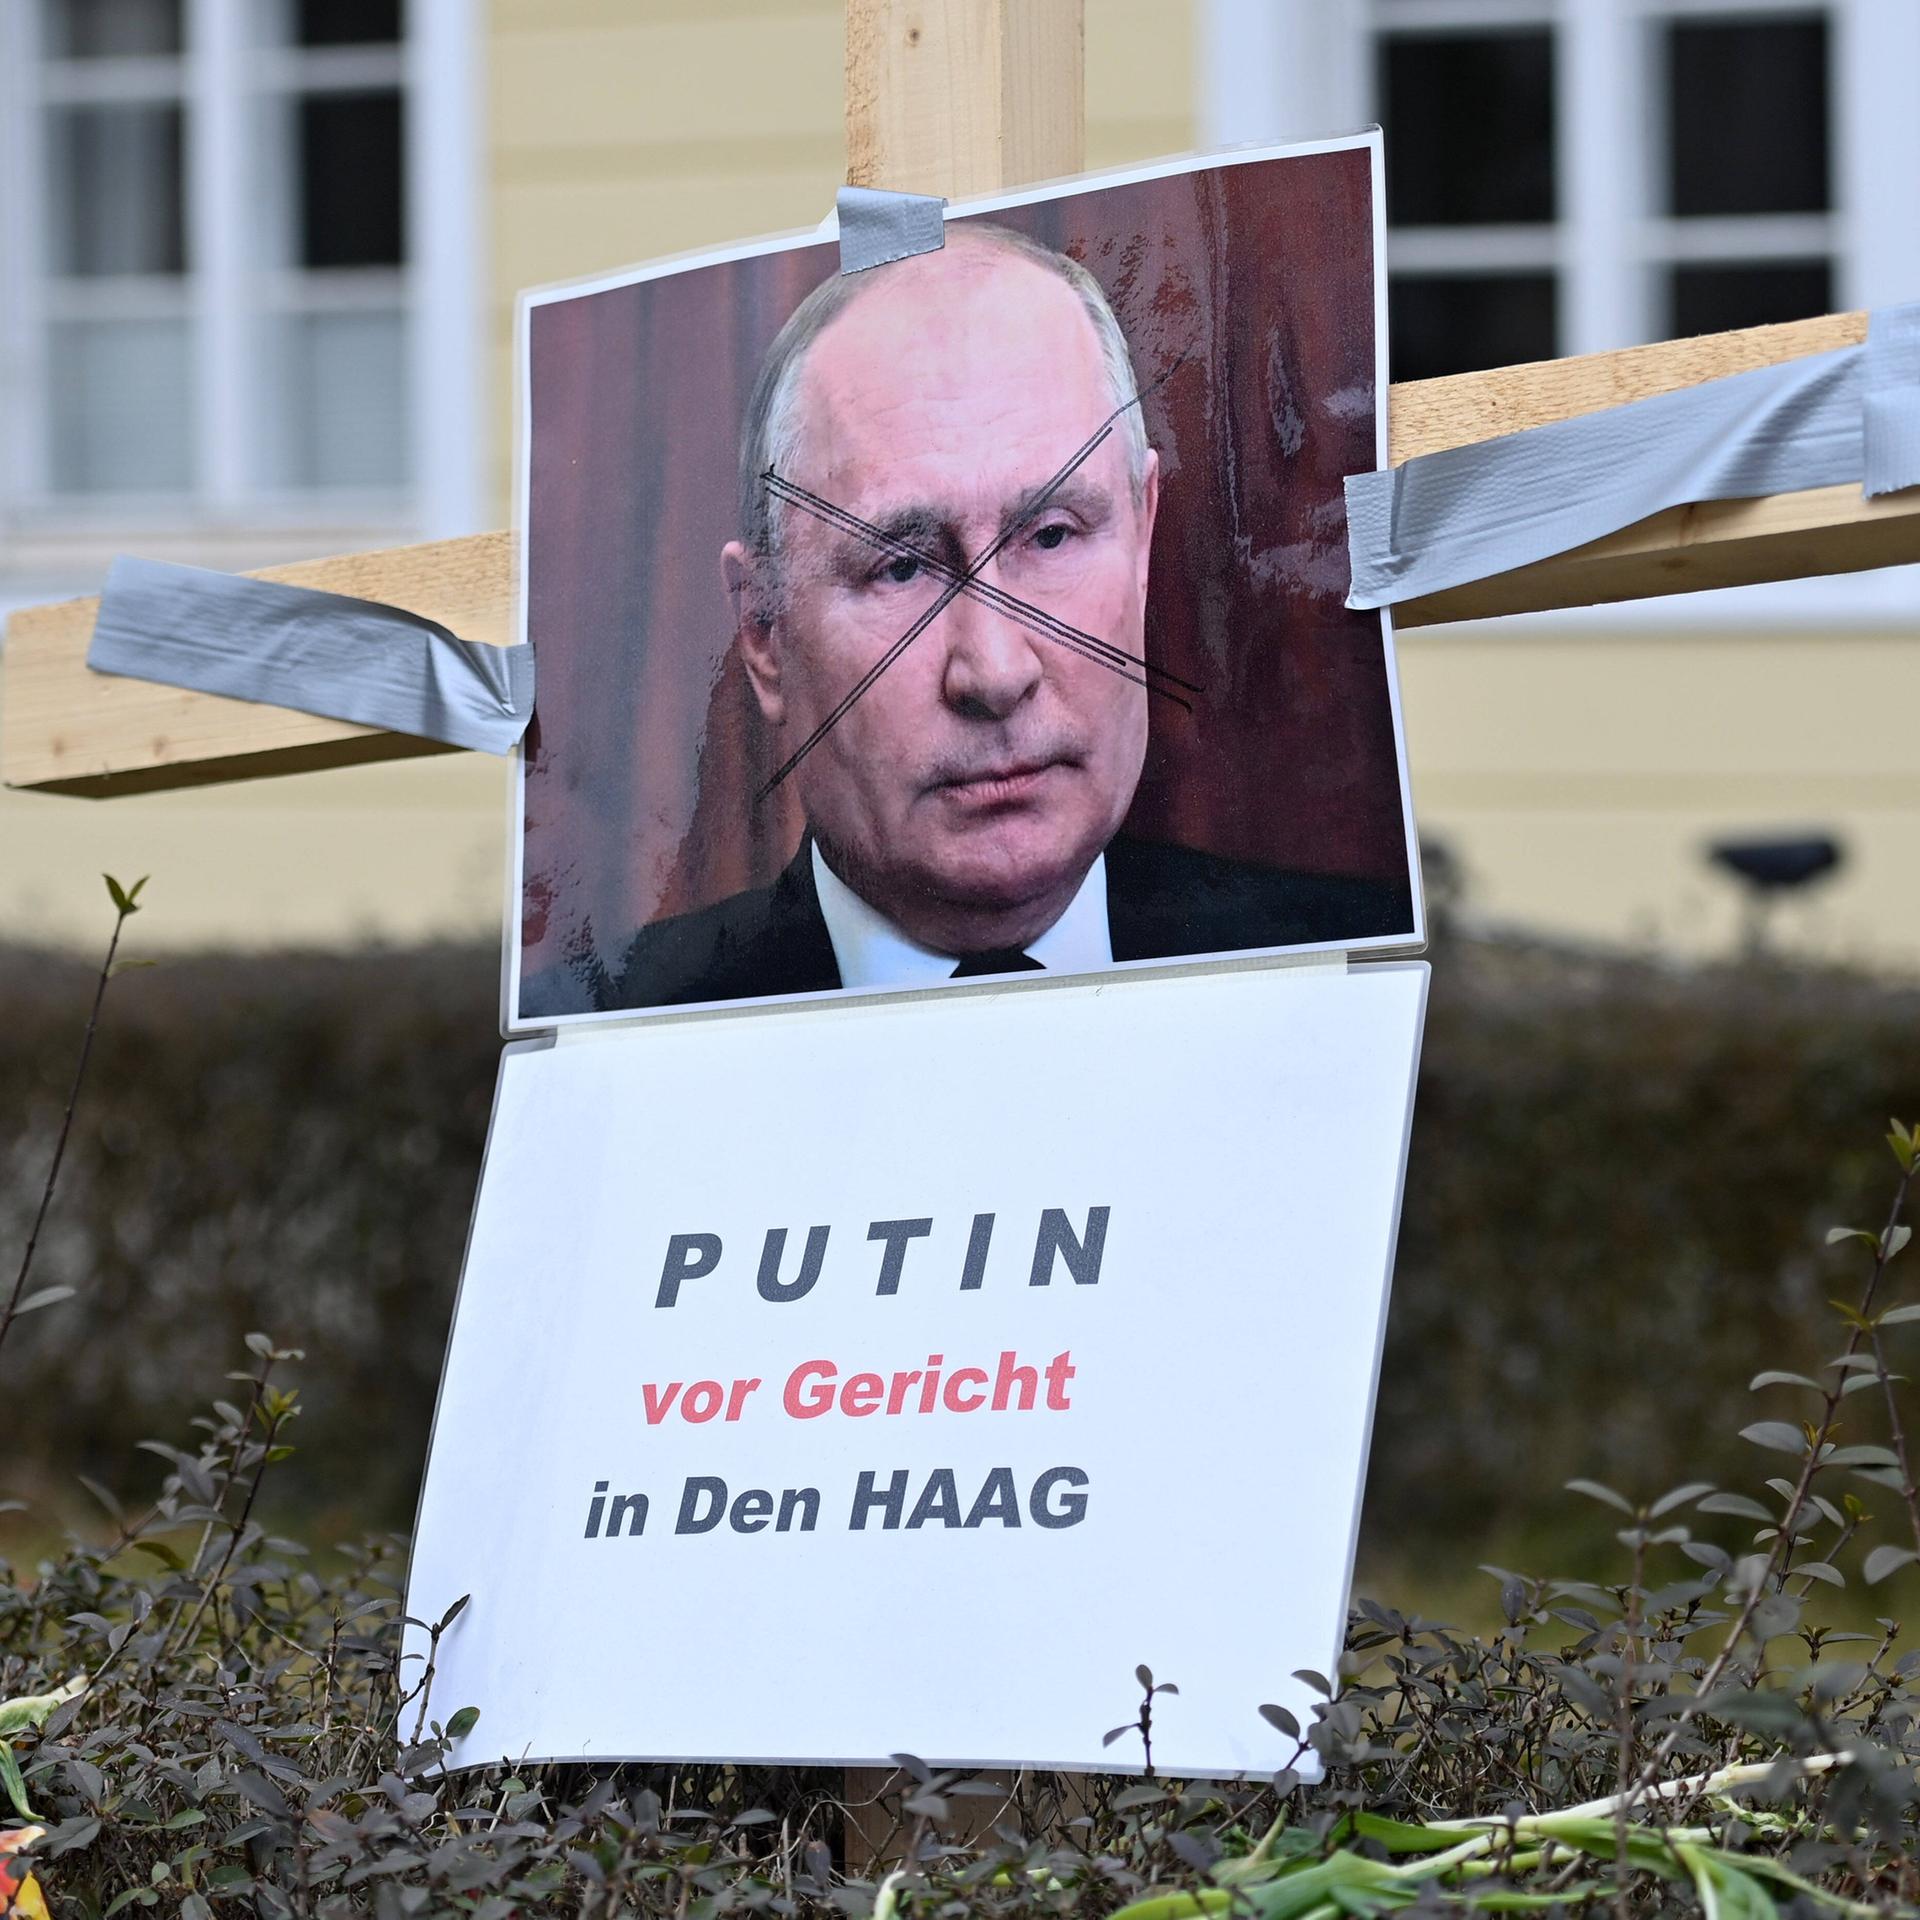 Putin nach Den Haag? – Der Haftbefehl, der Angriffskrieg und das Völkerrecht